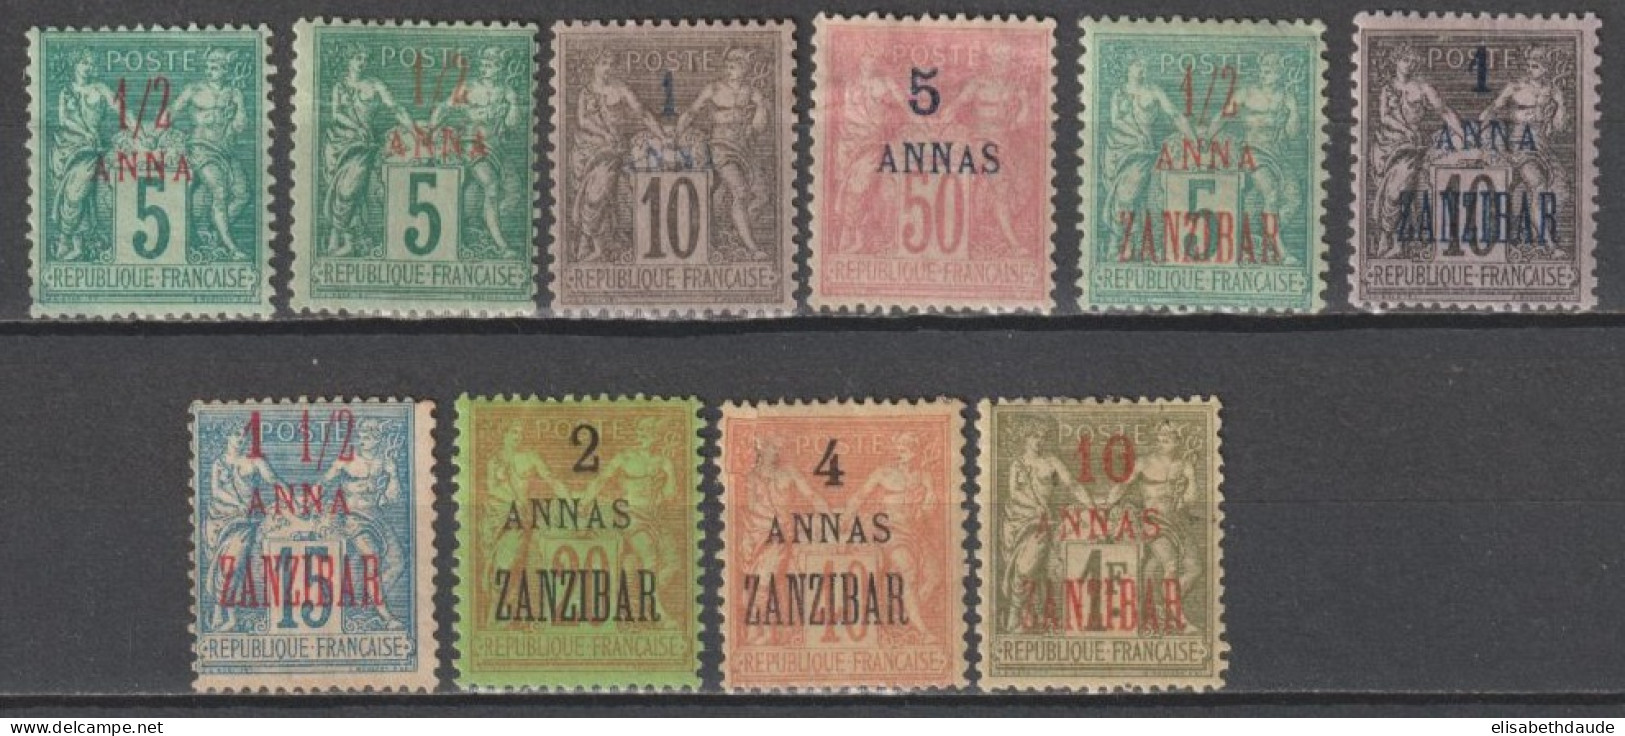 ZANZIBAR - 1894/1897 - TYPE SAGE - YVERT N° 1+1a+2A+8+17+21/23+26+29 * MH - COTE = 269 EUR. - Ungebraucht